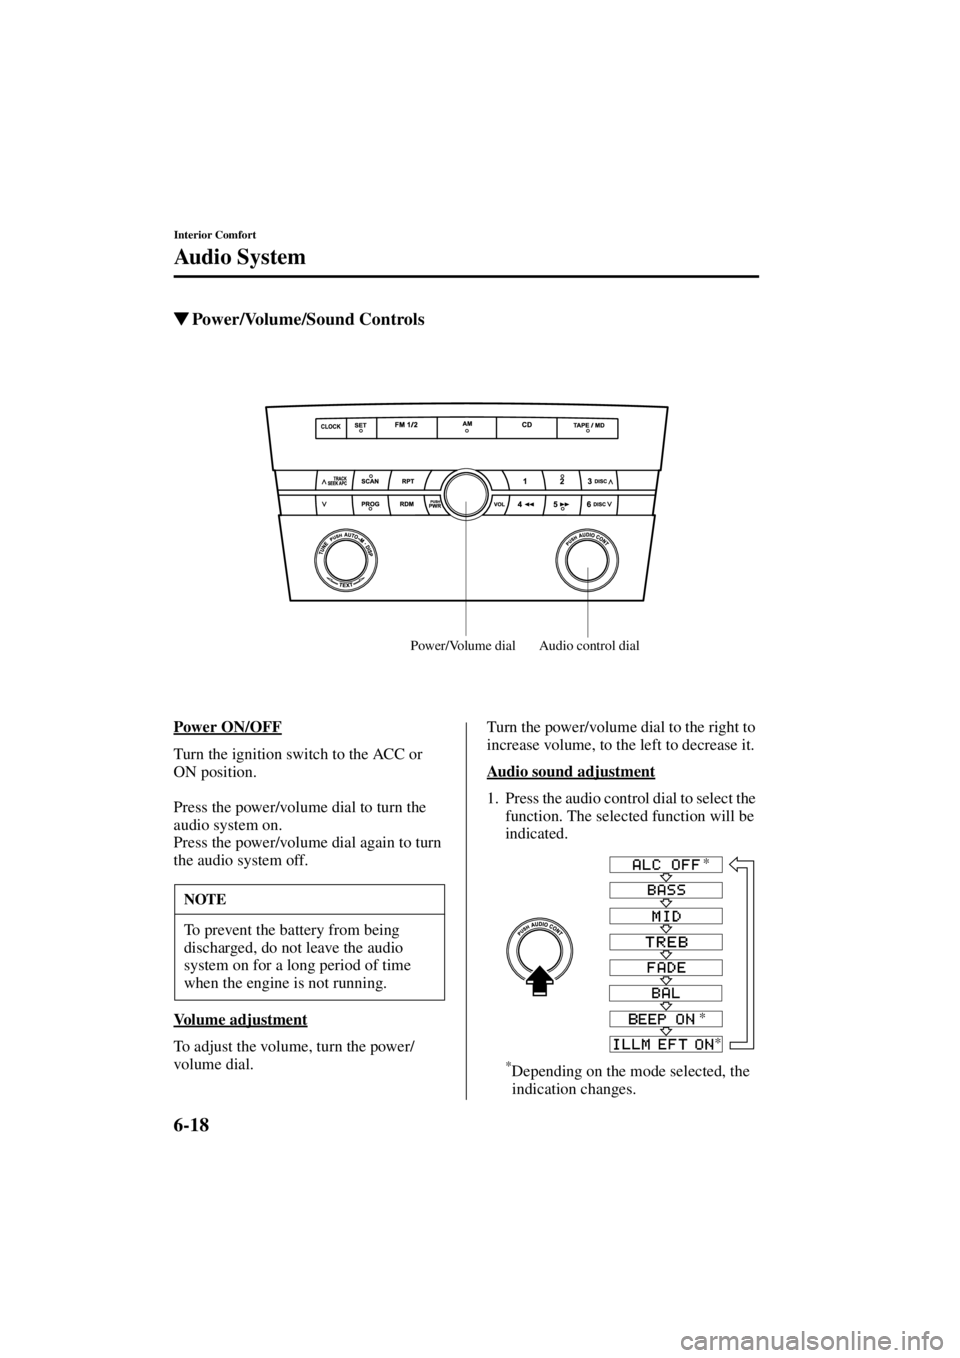 MAZDA MODEL 3 4-DOOR 2004  Owners Manual 6-18
Interior Comfort
Au di o S ys t em
Form No. 8S18-EA-03I
Power/Volume/Sound Controls
Power ON/OFF
Turn the ignition switch to the ACC or 
ON position.
Press the power/volume dial to turn the 
aud